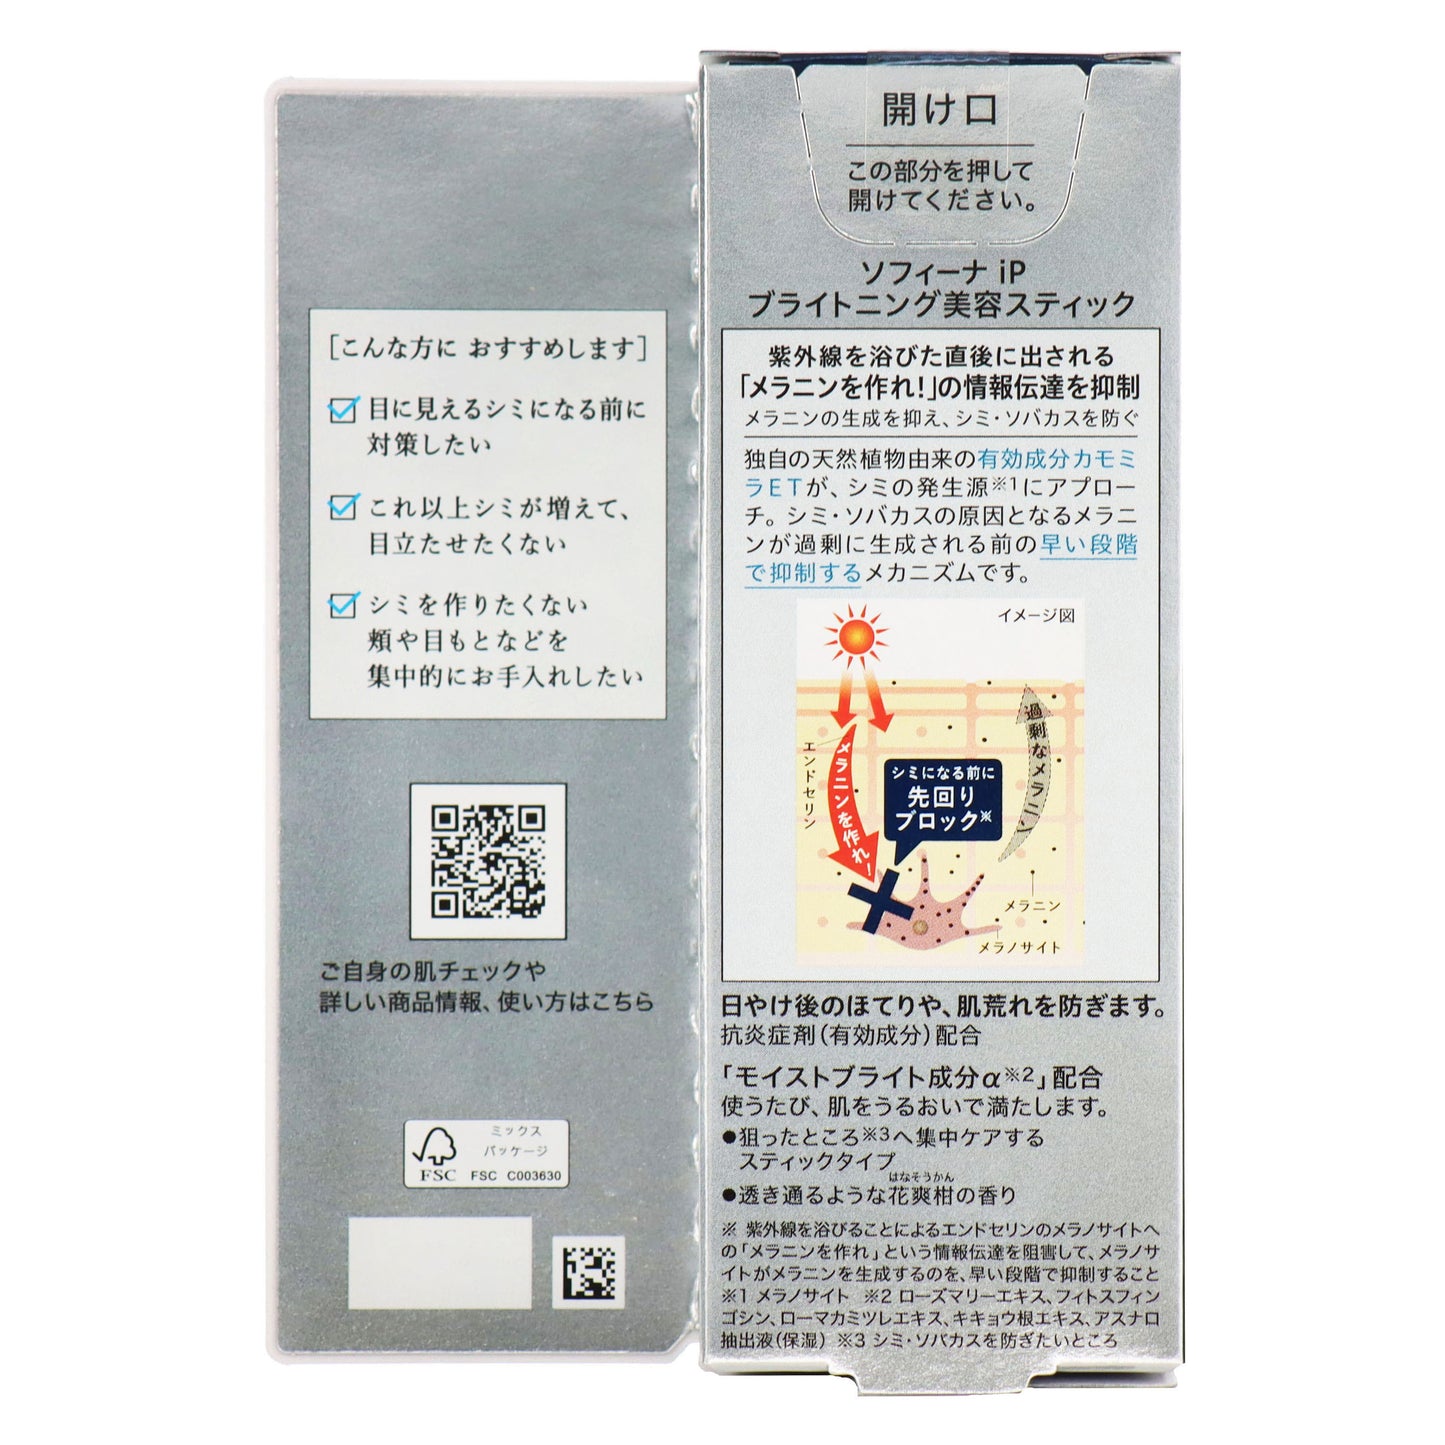 ソフィーナiP ブライトニング美容スティック〈医薬部外品〉 3.7g